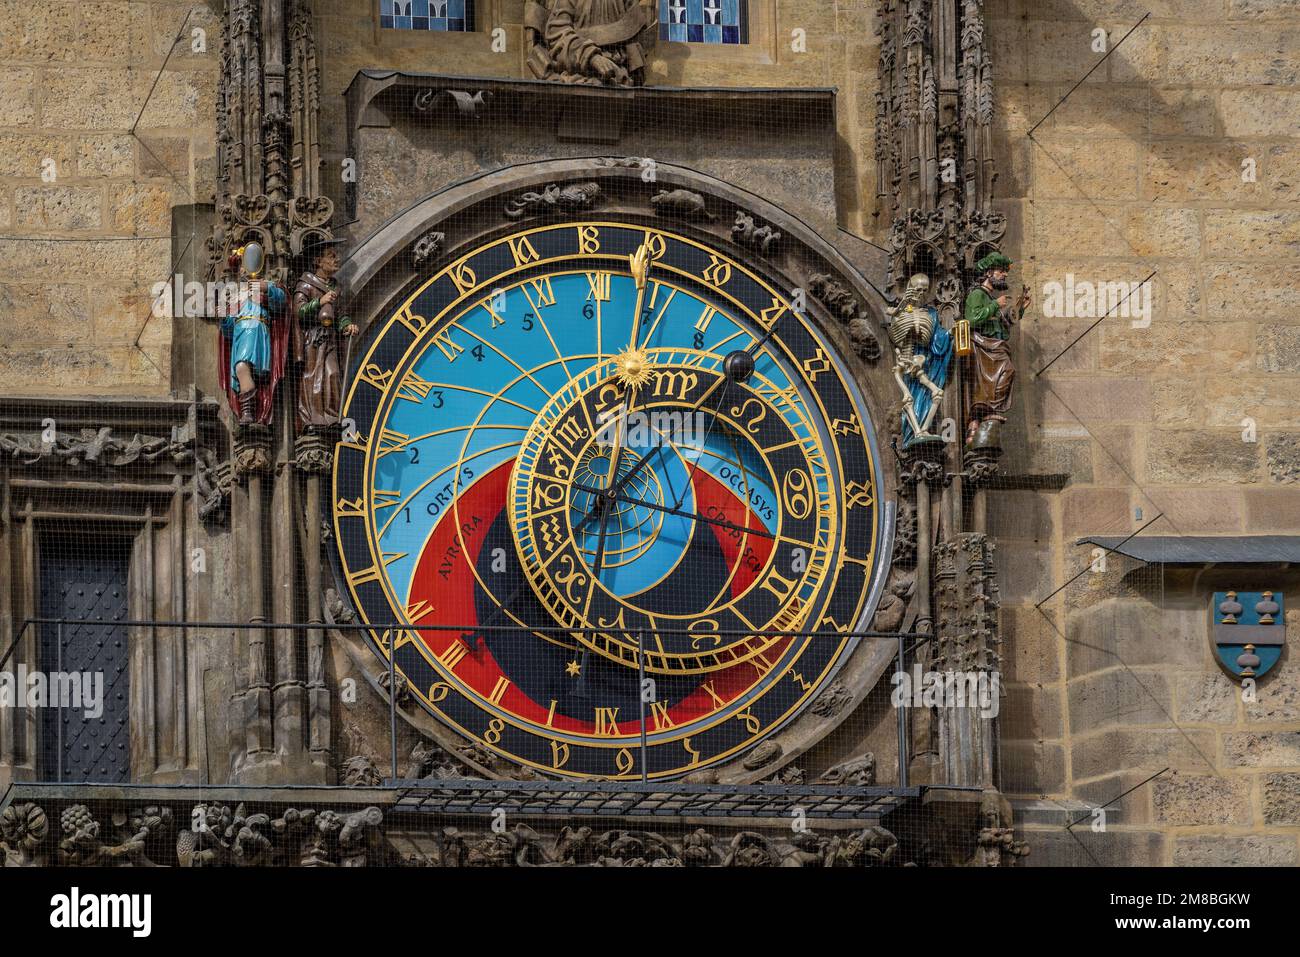 Astronomische Uhr mit astronomischer Ziffernscheibe im Alten Rathaus - Prag, Tschechische Republik Stockfoto